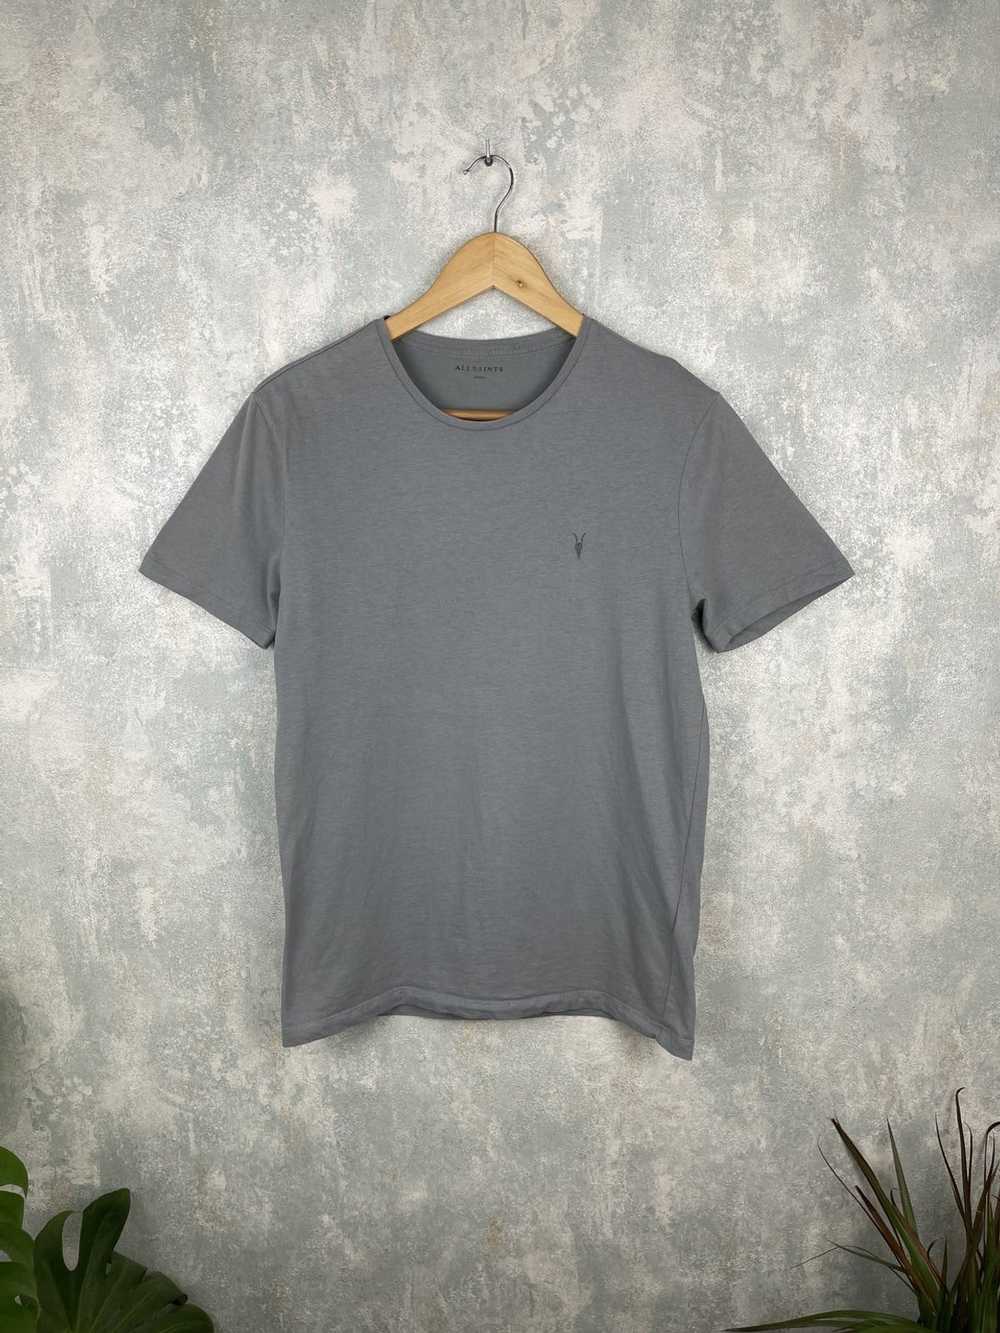 Allsaints AllSaints Grey T-Shirt - image 1